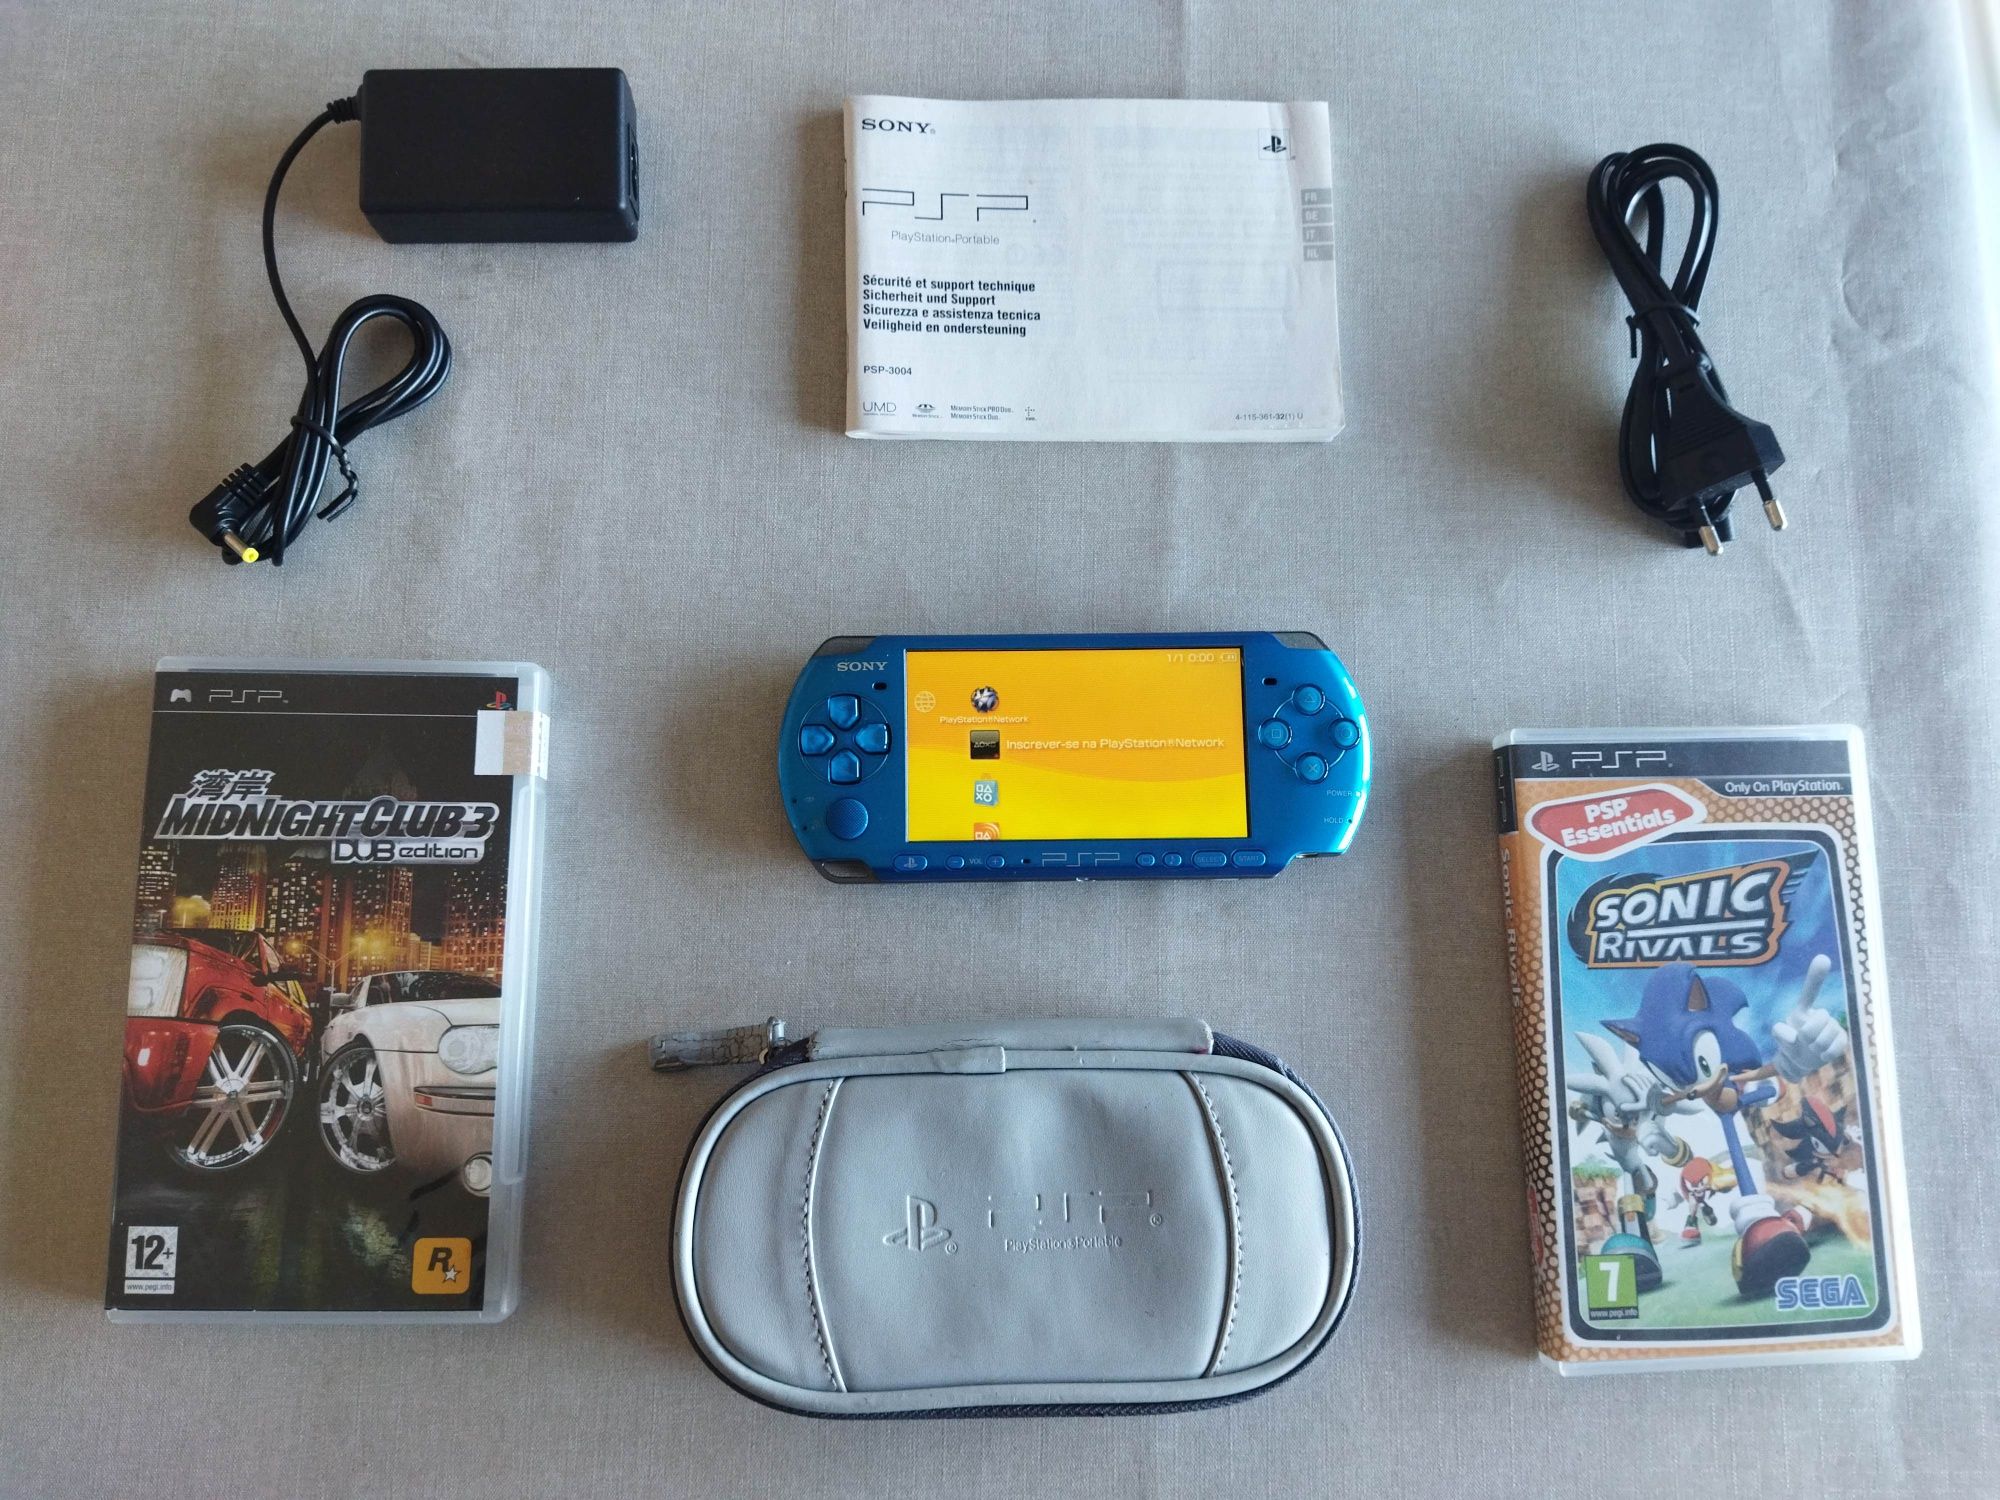 Consola original Sony PSP psp, imaculada, última versão cor rara azul